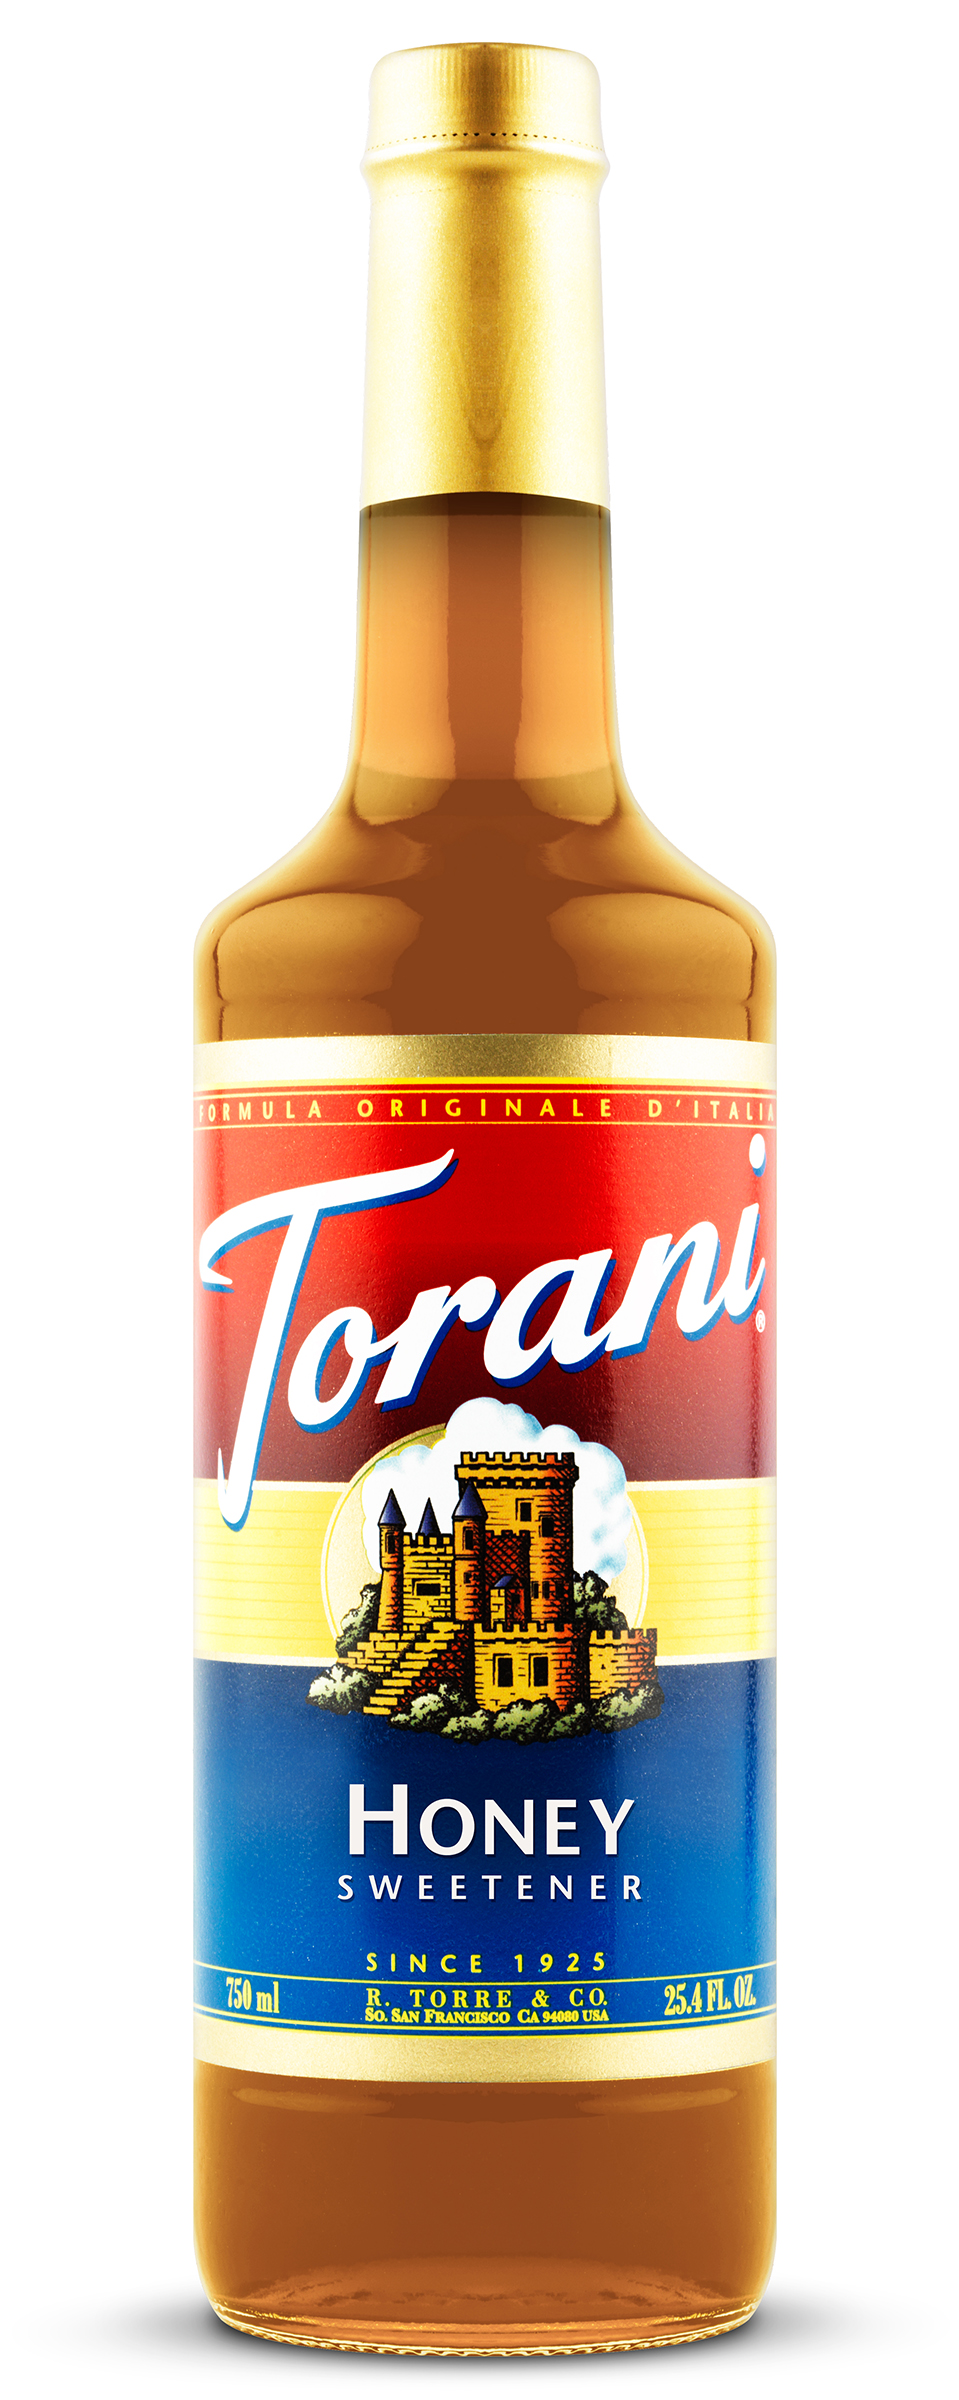 Torani Honey Sweetener TriState Restaurant Supply, Inc.